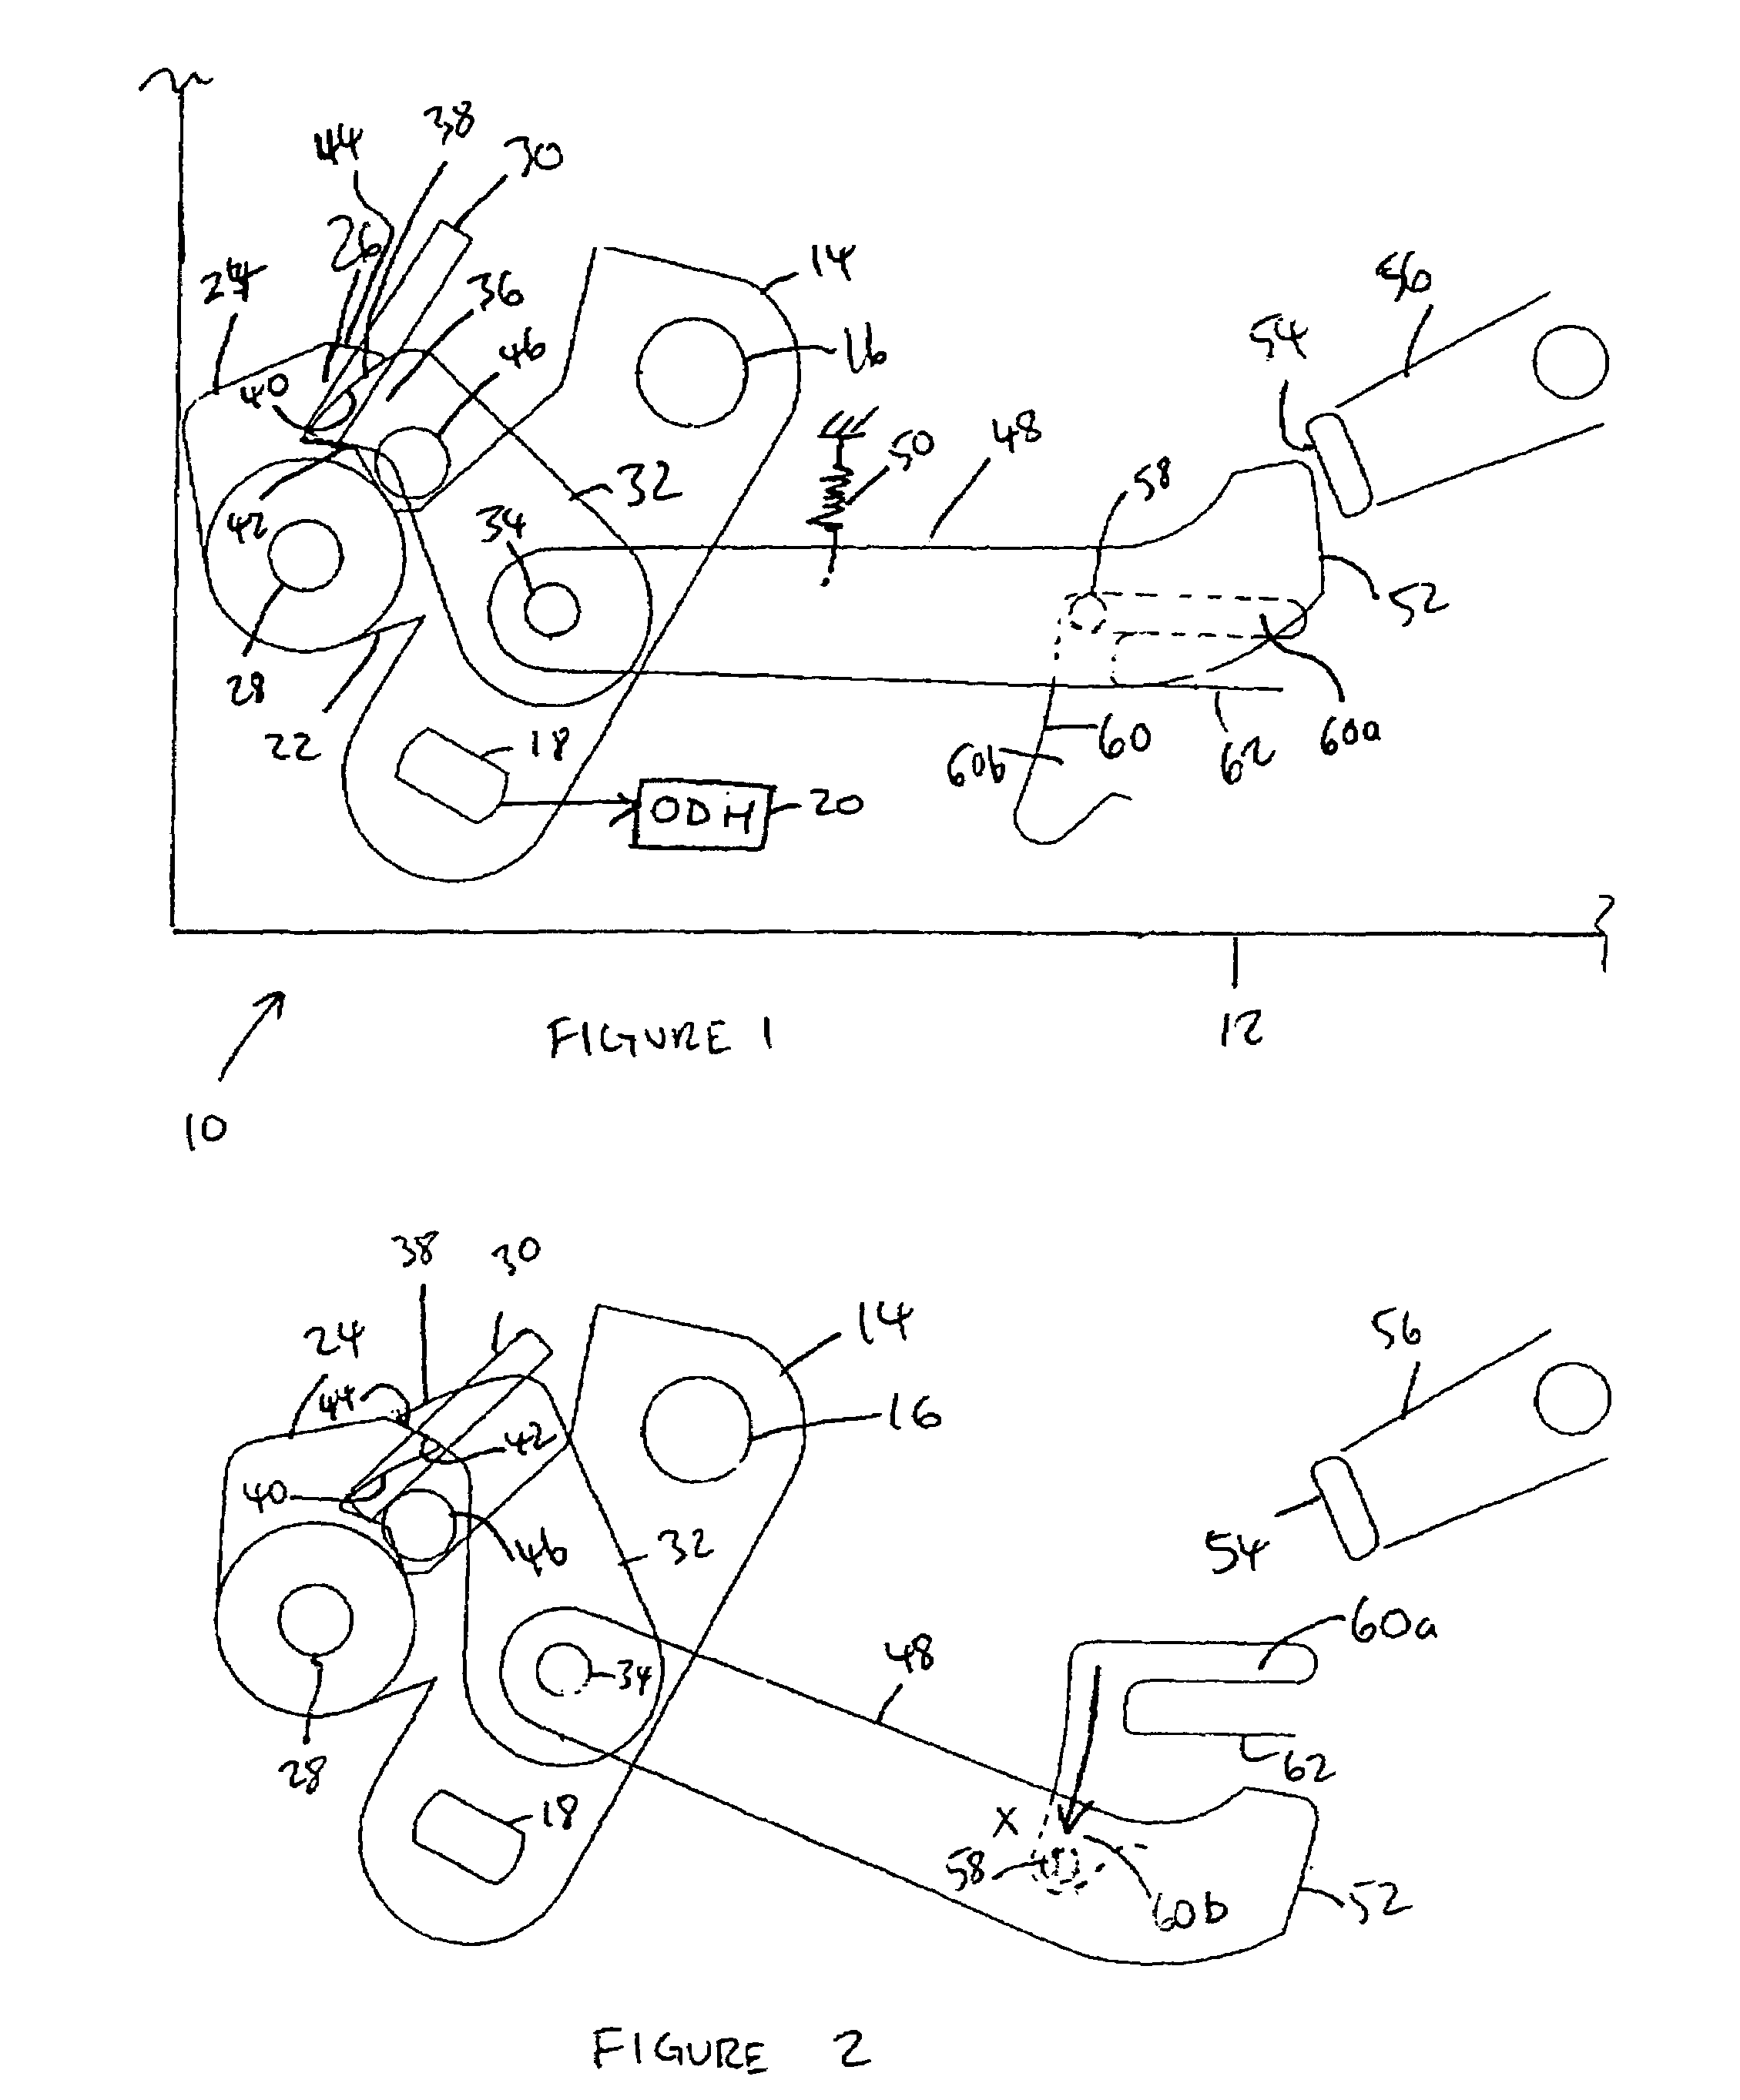 Inertia locking mechanism